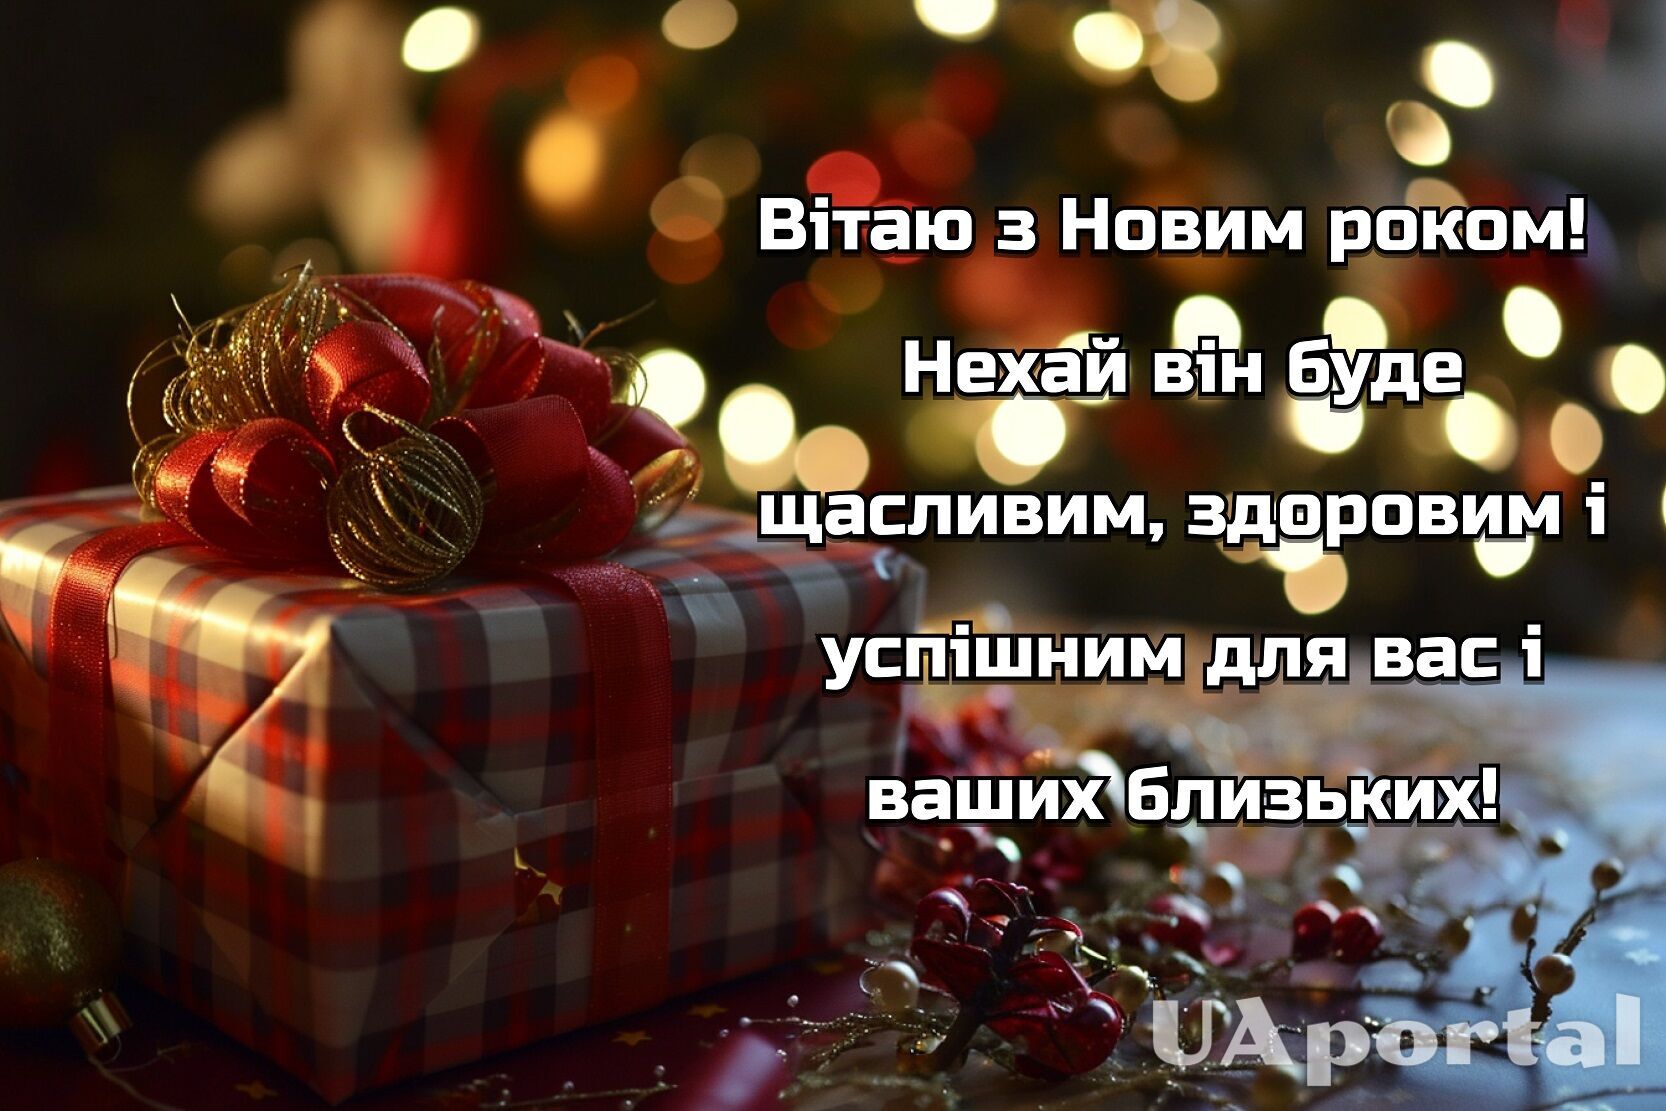 Со Старым Новым годом – поздравления на украинском языке – Люкс ФМ